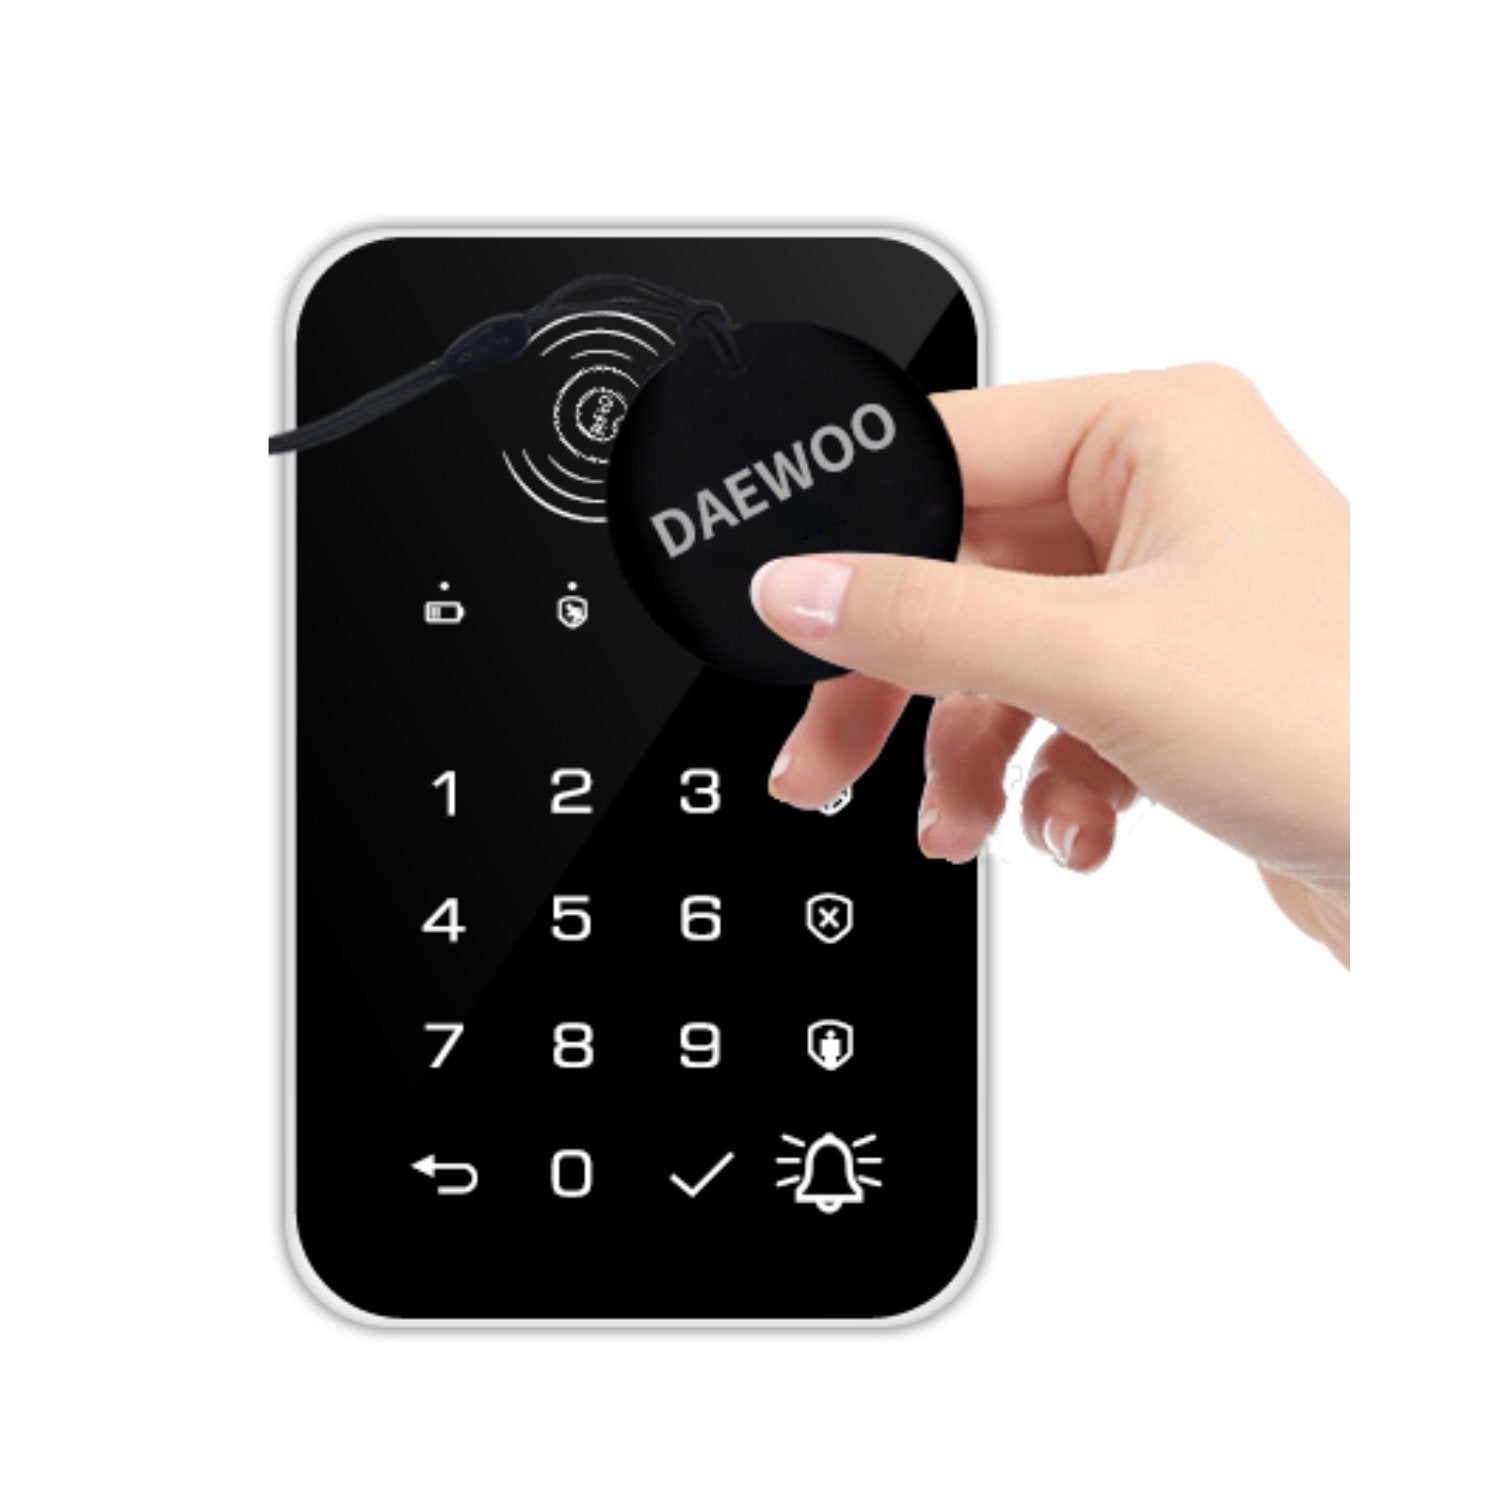 AM313 | Alarme Daewoo Wifi / GSM 4G à écran tactile - Daewoo Security